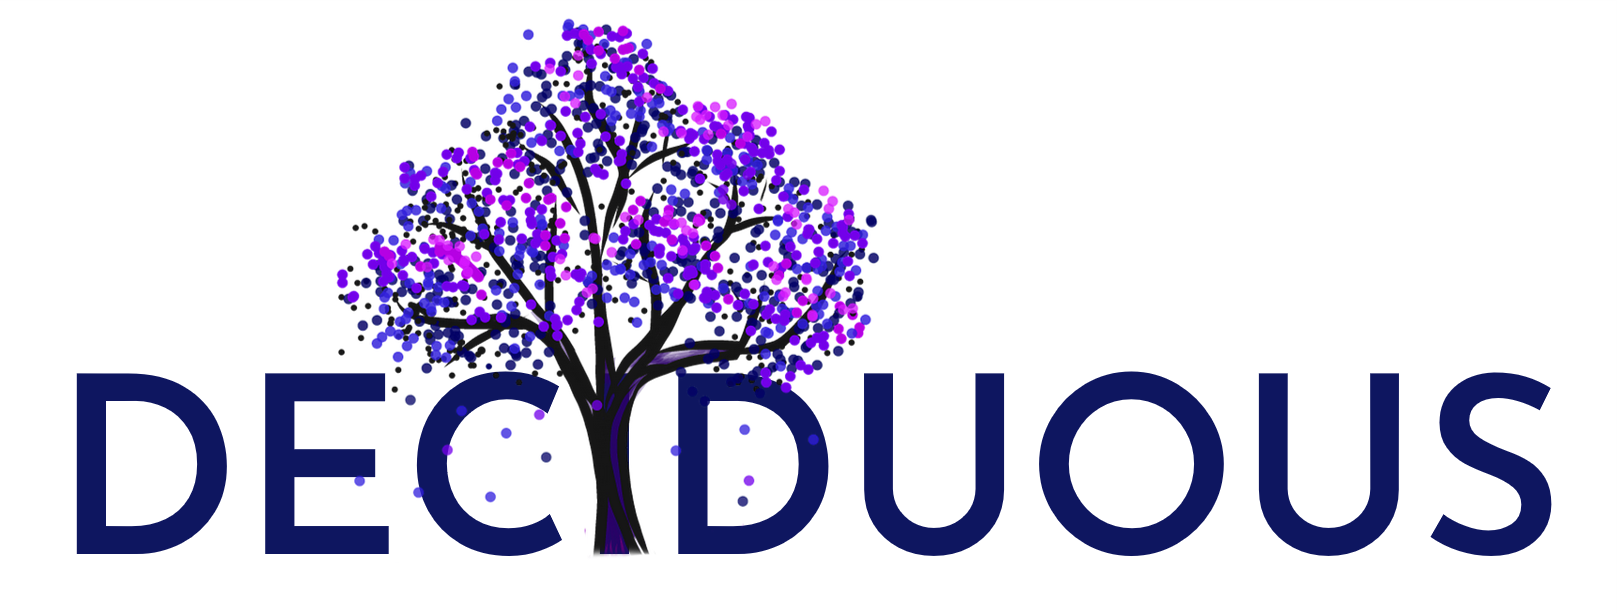 Deciduous logo